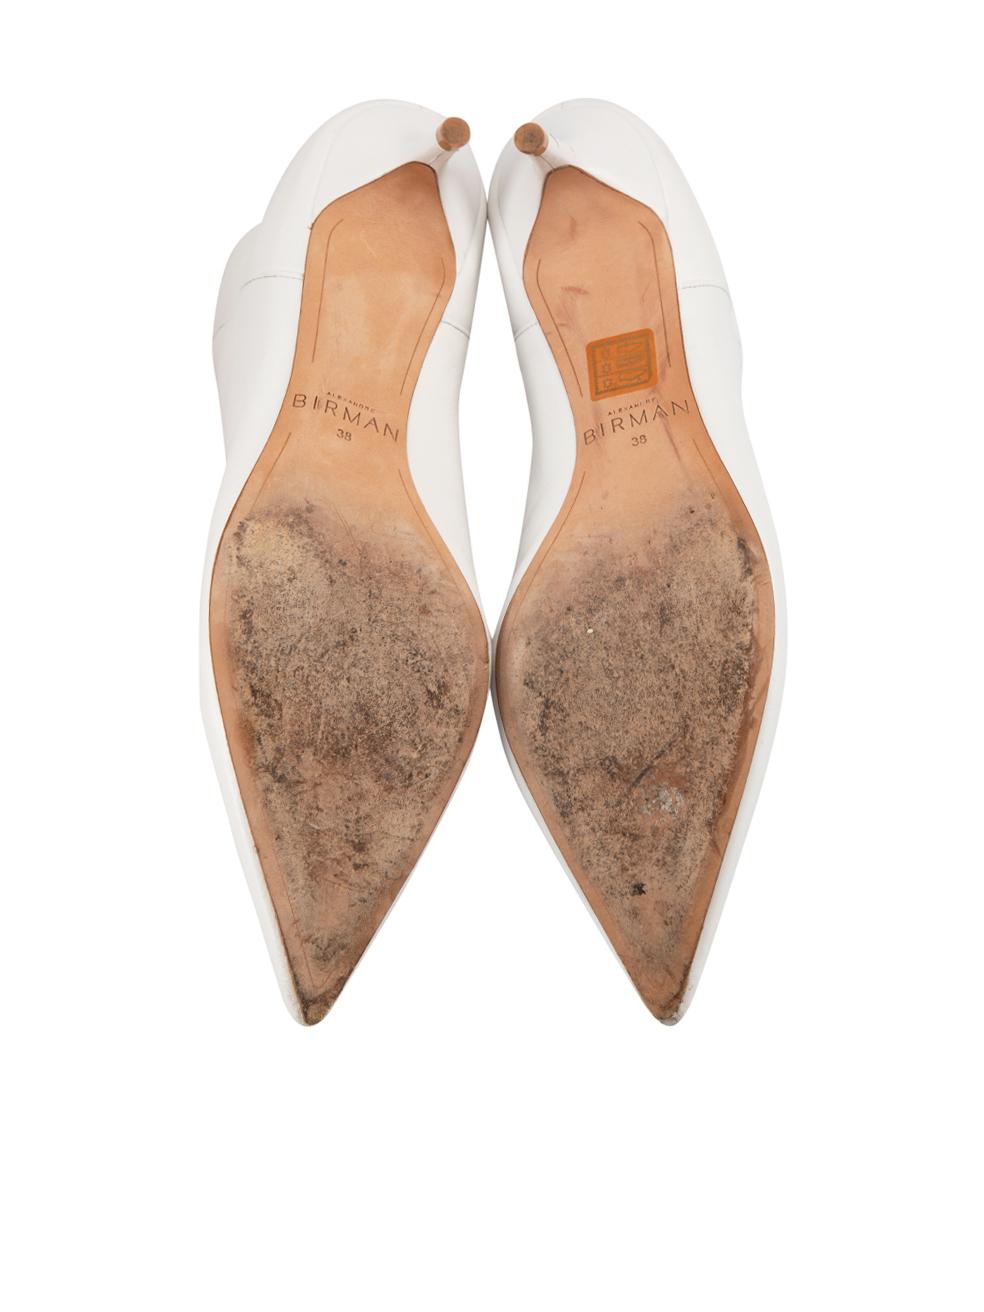 Women's Alexandre Birman White Leather Kitten Heel Ankle Boots Size IT 38